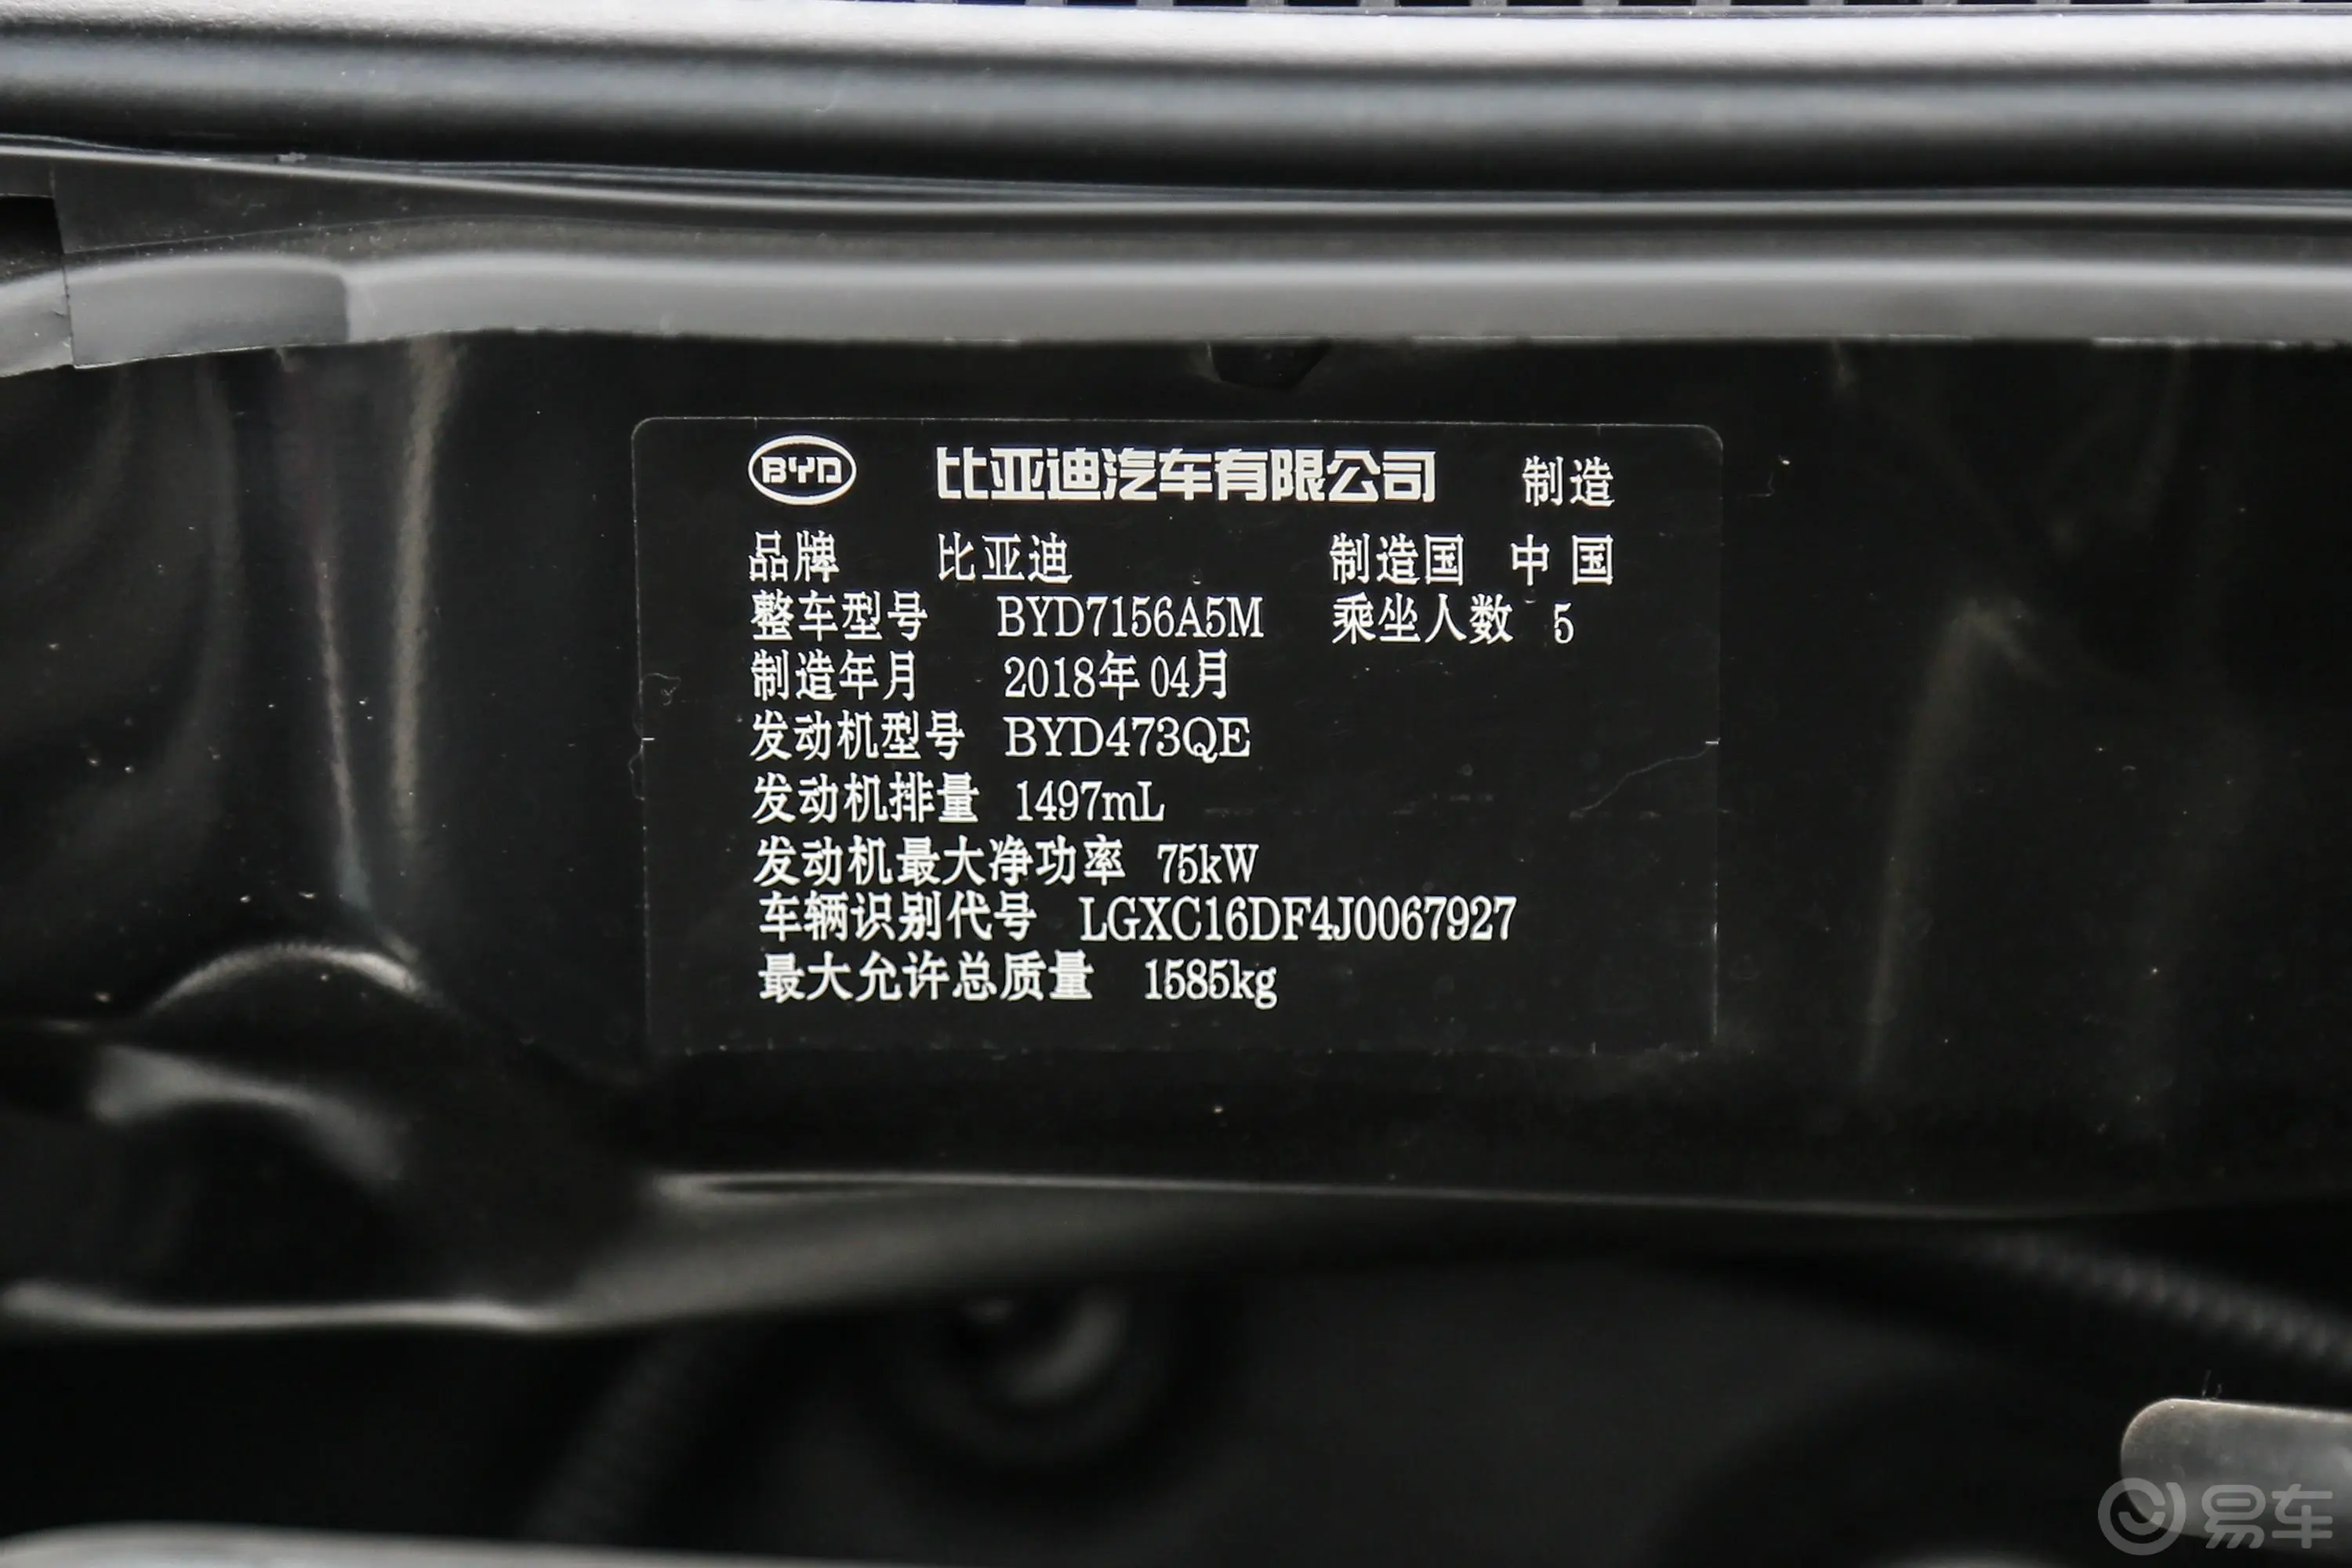 比亚迪F31.5L 手动 精英版车辆信息铭牌